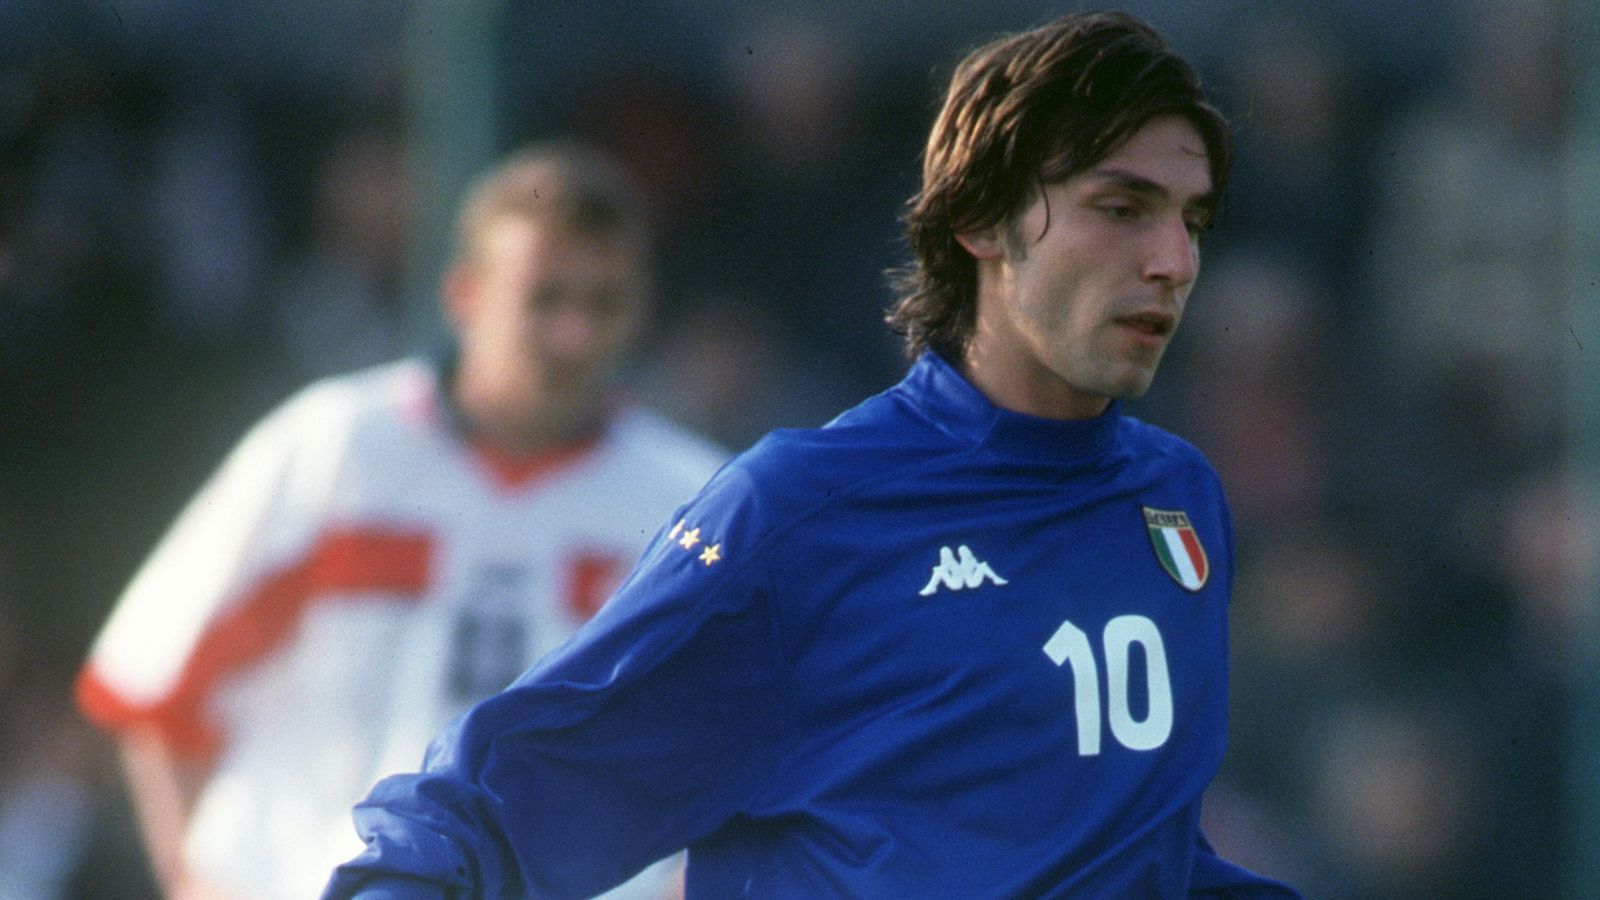 
                <strong>2000 - Andrea Pirlo (Italien)</strong><br>
                Für Andrea Pirlo war die EM-Endrunde im Jahr 2000 eine mit Licht und Schatten. Tore wechselten sich mit Platzverweisen ab, dann folgte wieder eine Glanzleistung. Nachdem er völlig übermotiviert gegen die Slowakei vom Platz flog, drückte Pirlo dem italienischen EM-Erfolg im Endspiel gegen Tschechien seinen Stempel auf. Mit einem verwandelten Strafstoß und einem Freistoßtor sorgte der damalige Inter-Profi im Alleingang für den Titelgewinn Italiens. Es war der Auftakt zu einer Weltkarriere mit dem Gewinn der WM, der Champions League, diverser Meistertitel. Jetzt ist der 41-Jährige Trainer von Juventus Turin, ließ seine aktive Karriere zuvor in der MLS bei New York City FC ausklingen.
              